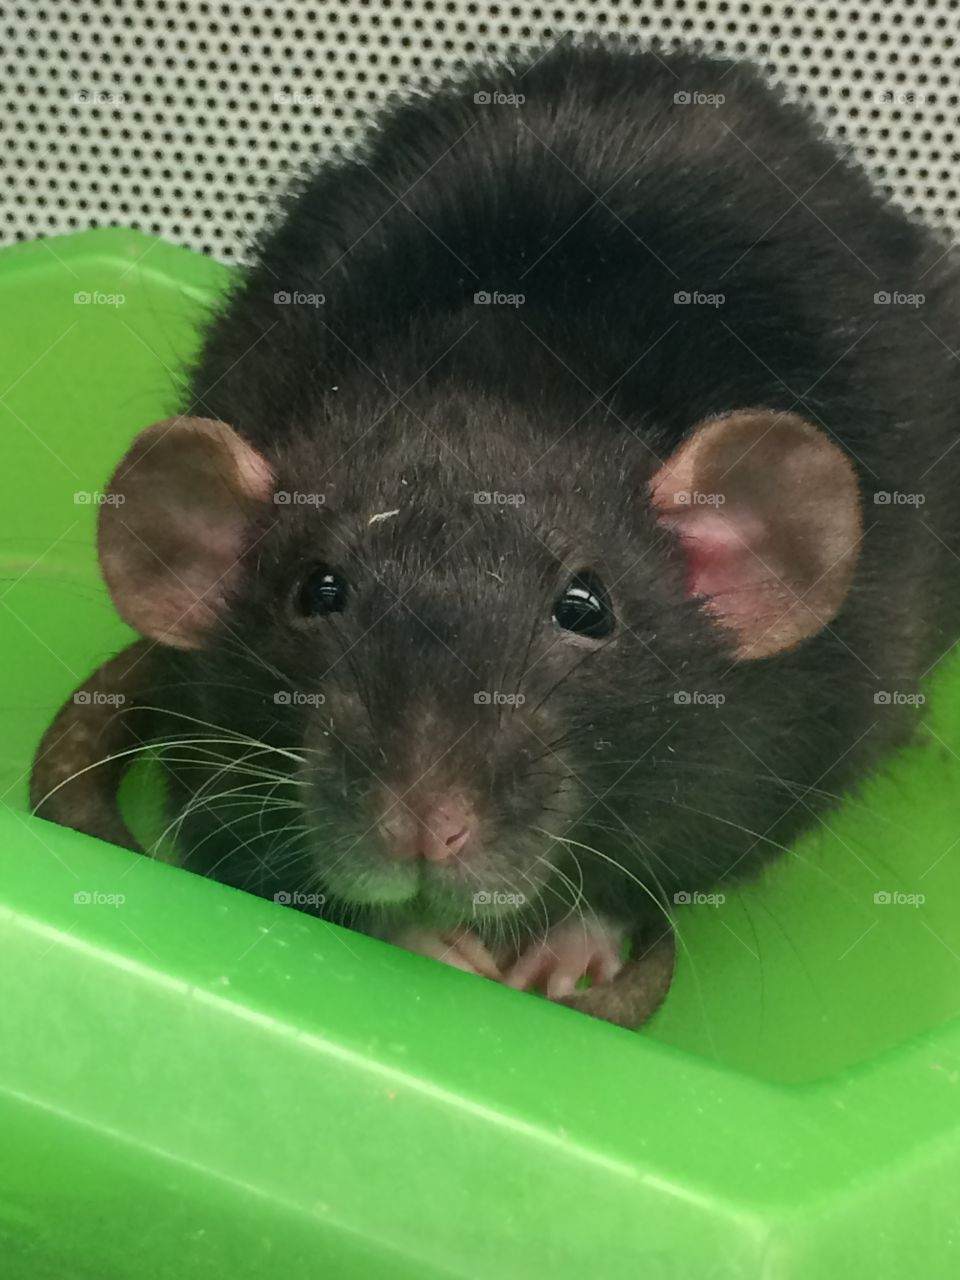 Black rat. Cute rat at the pet store kept staring at me